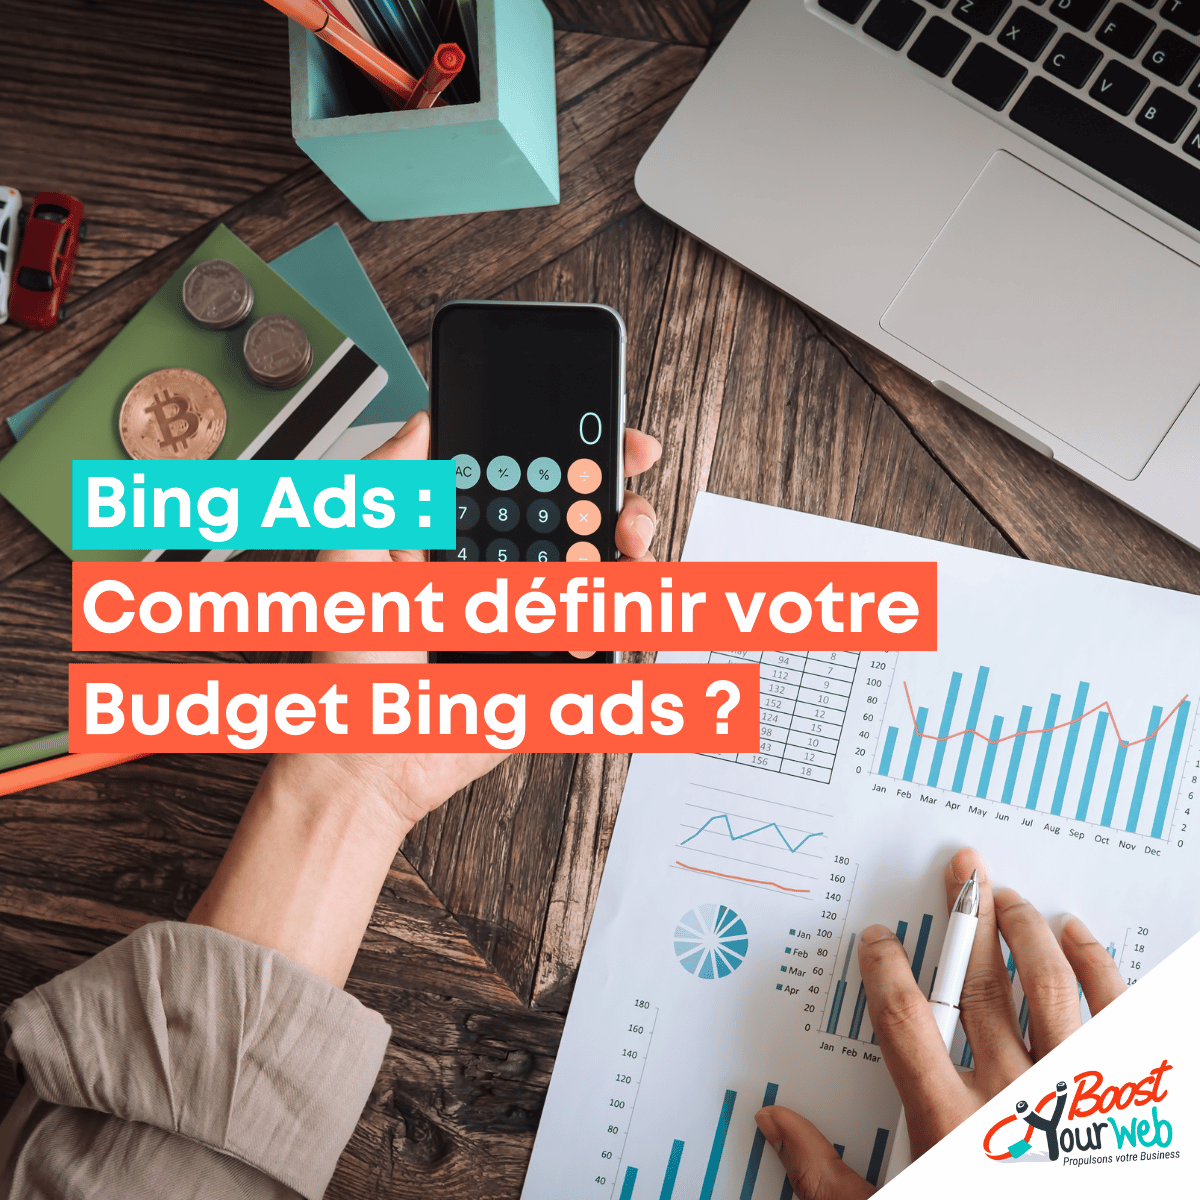 Comment définir votre Budget Bing ads ?